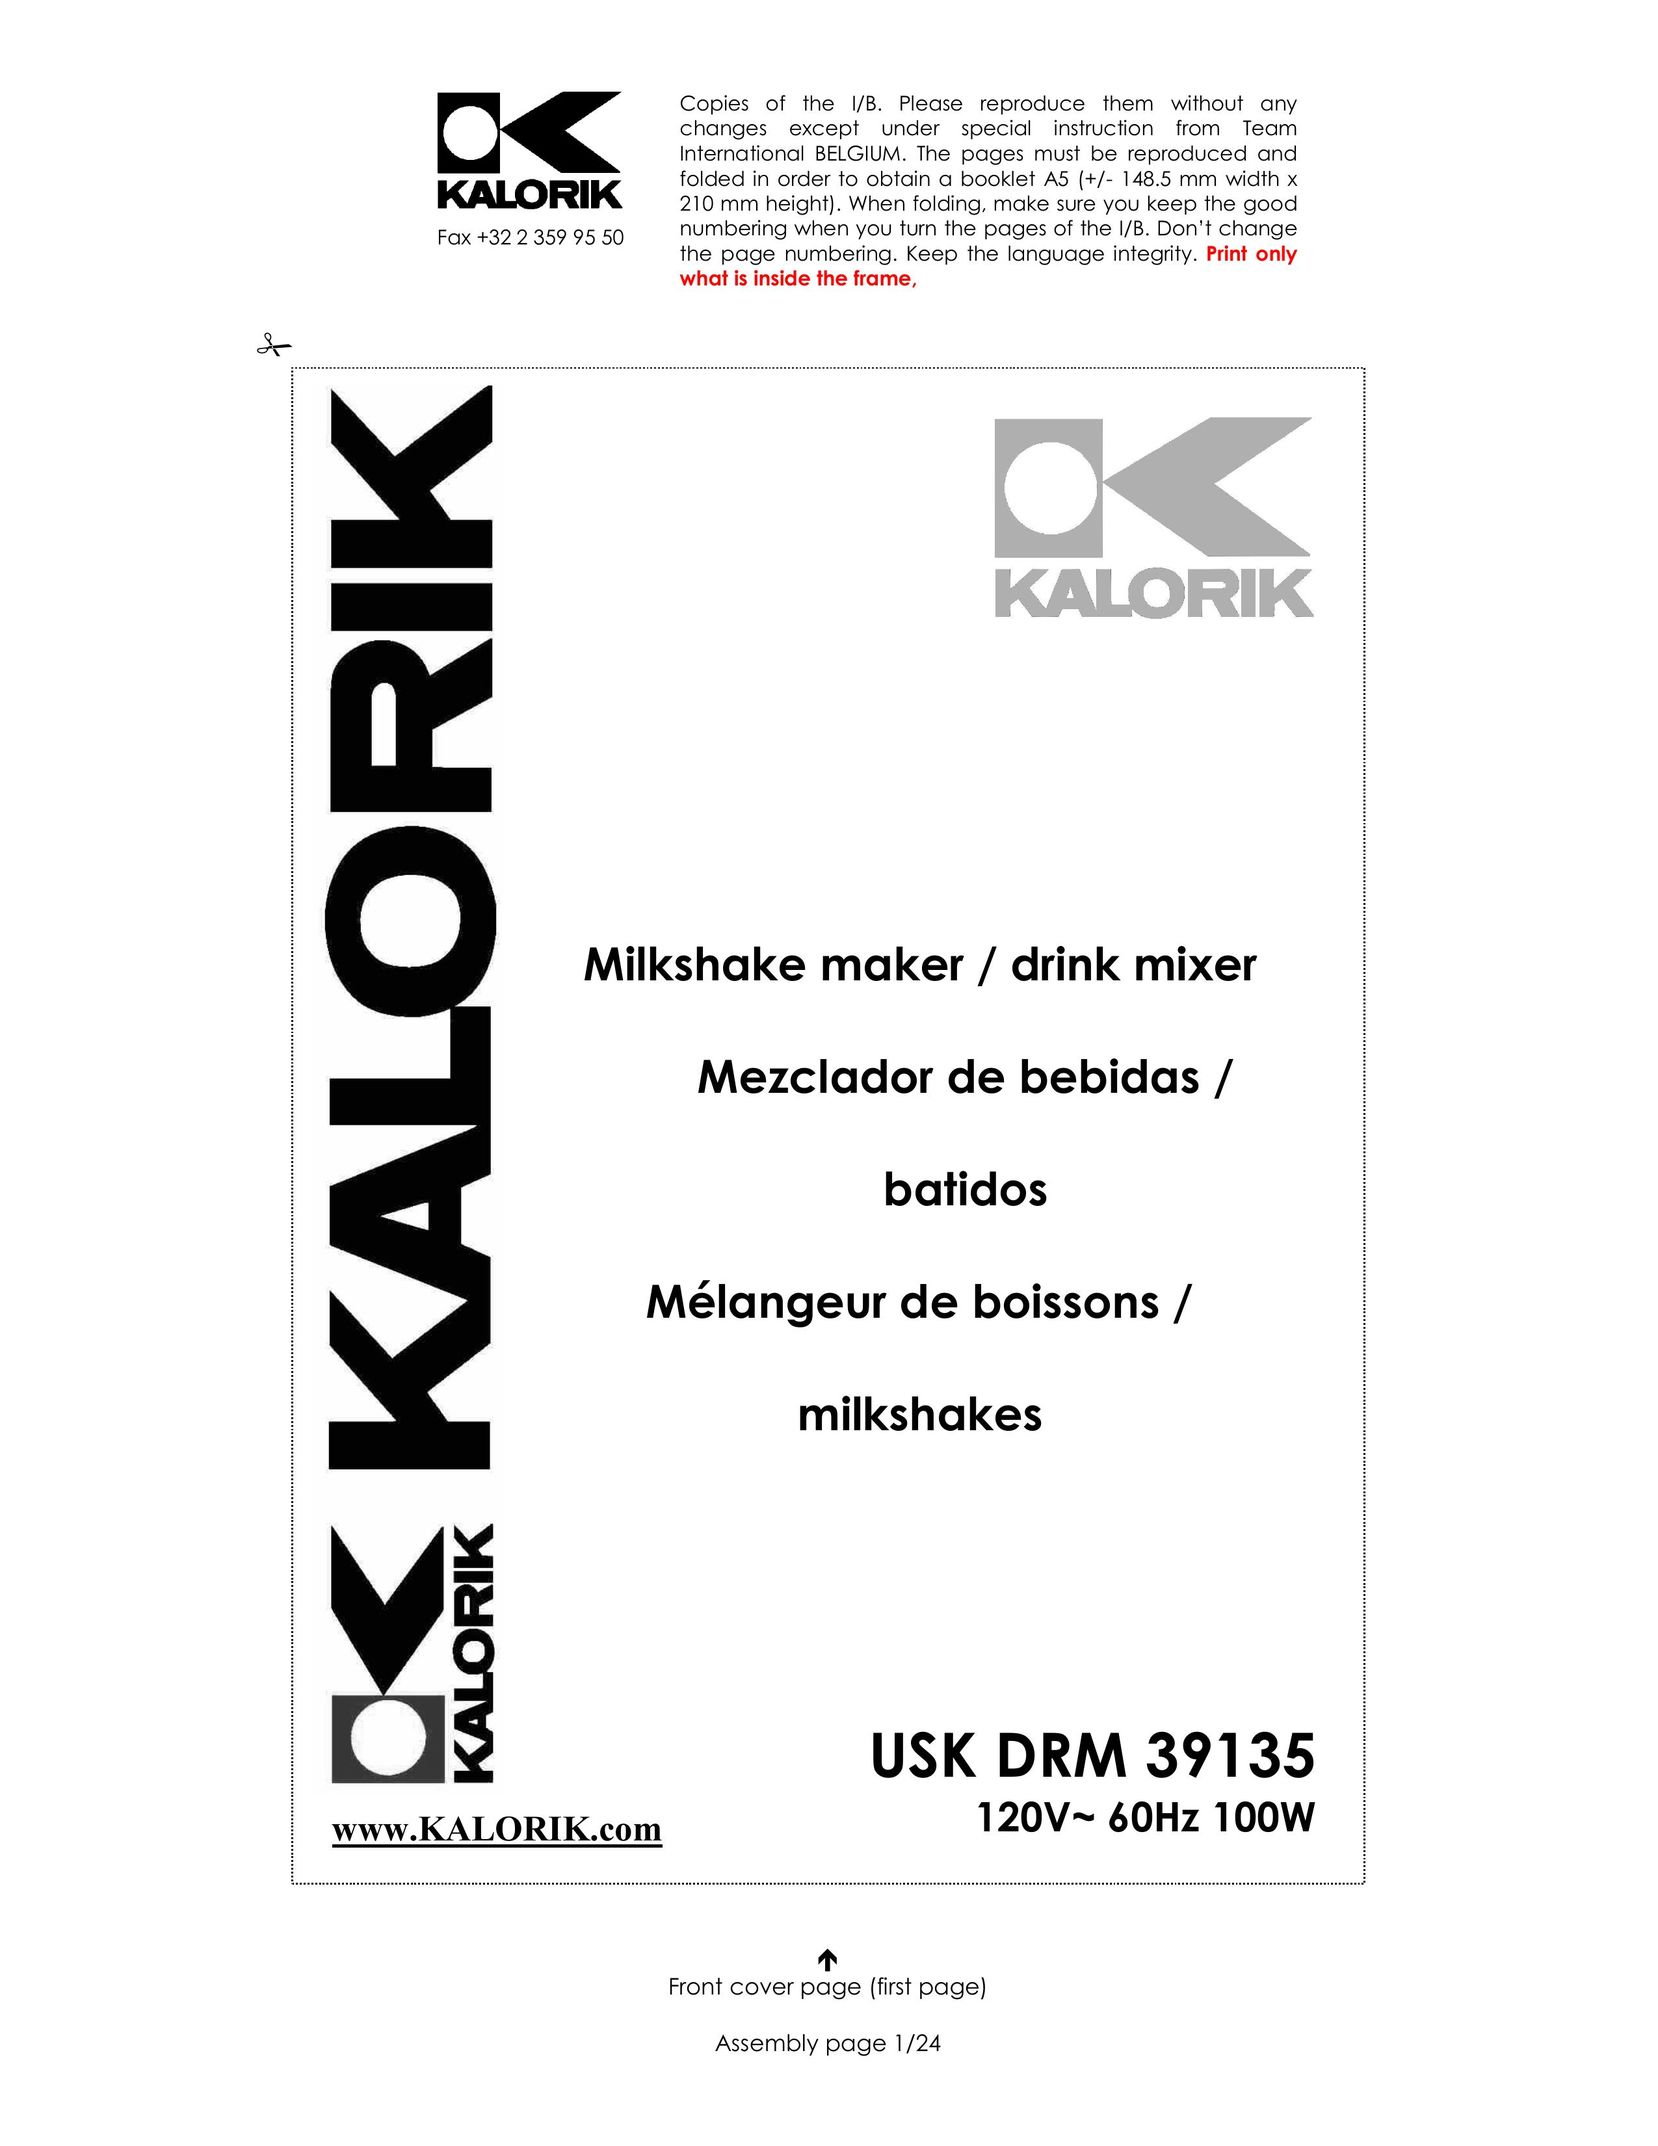 Kalorik USK DRM 39135 Mixer User Manual